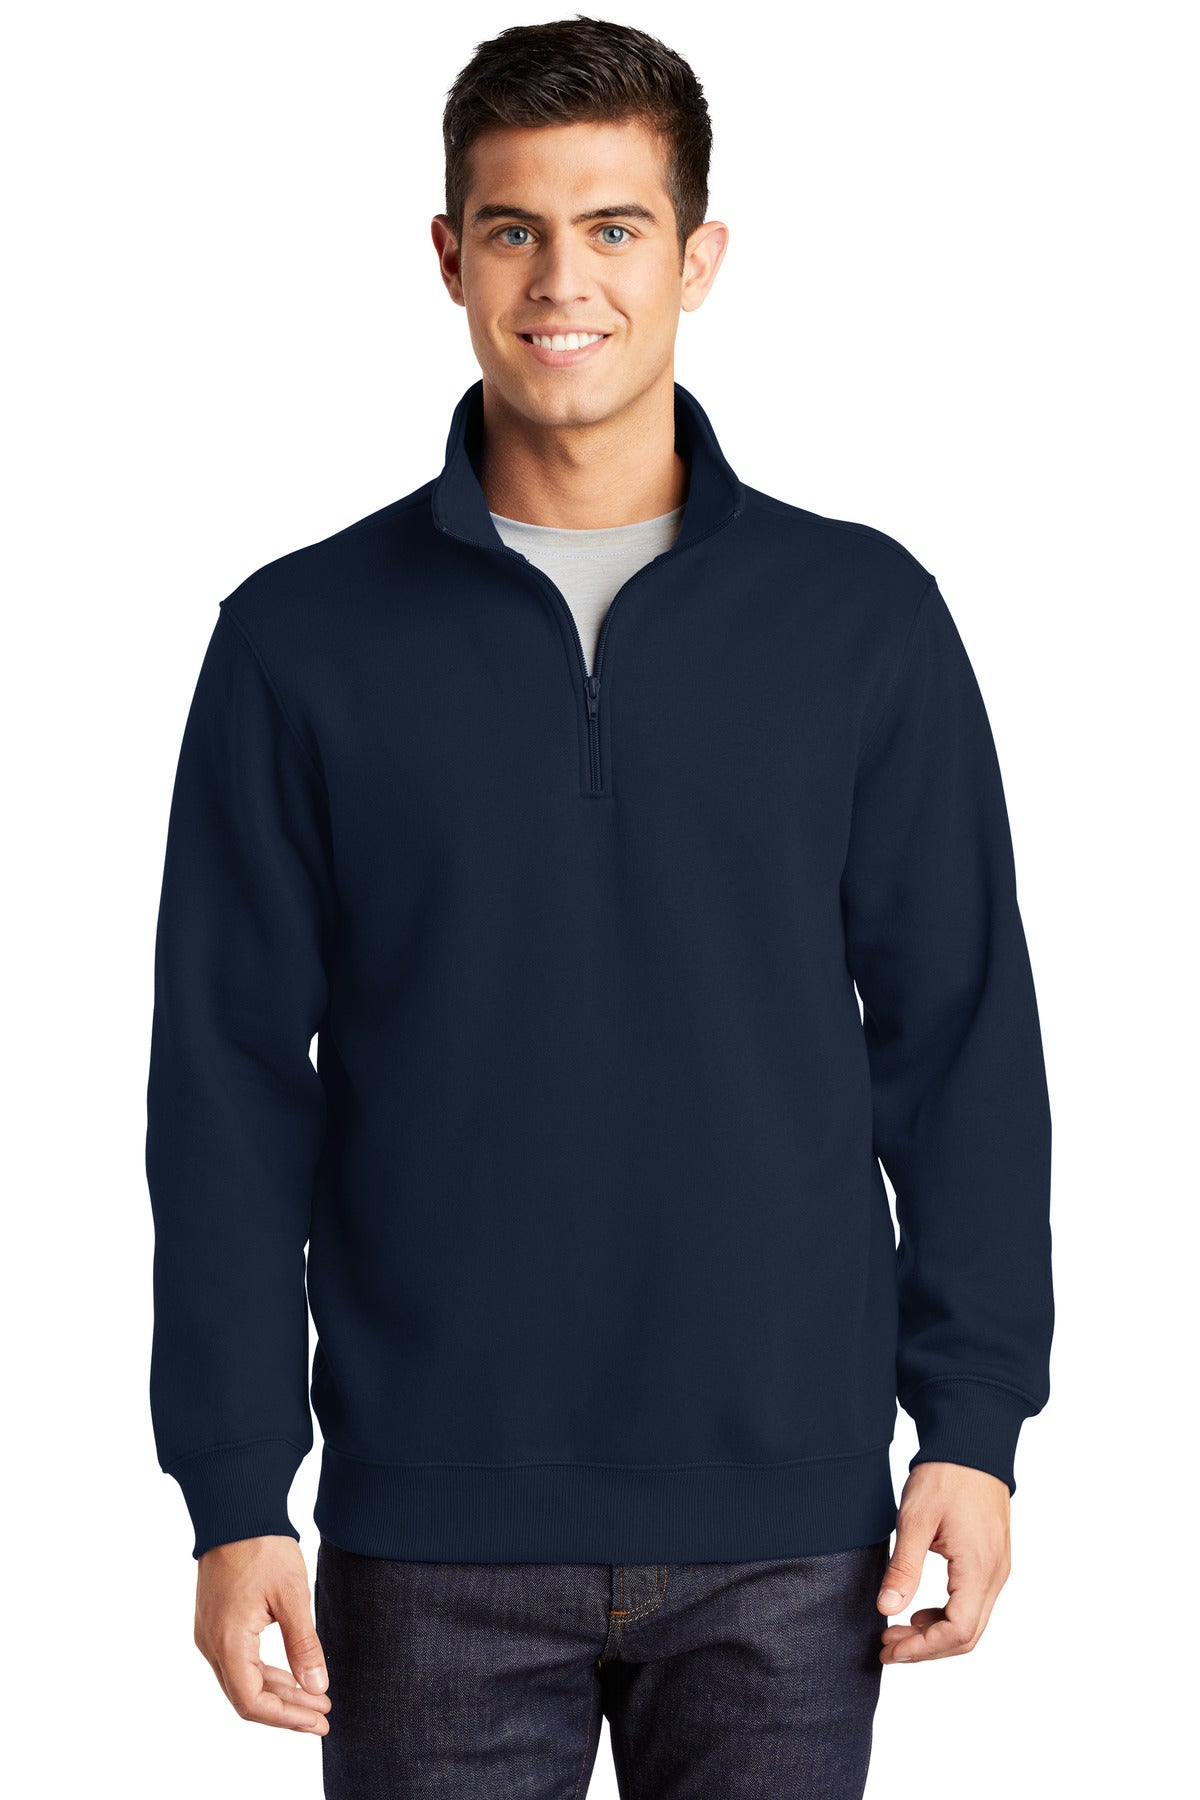 Sweatshirts/Fleece True Navy Sport-Tek